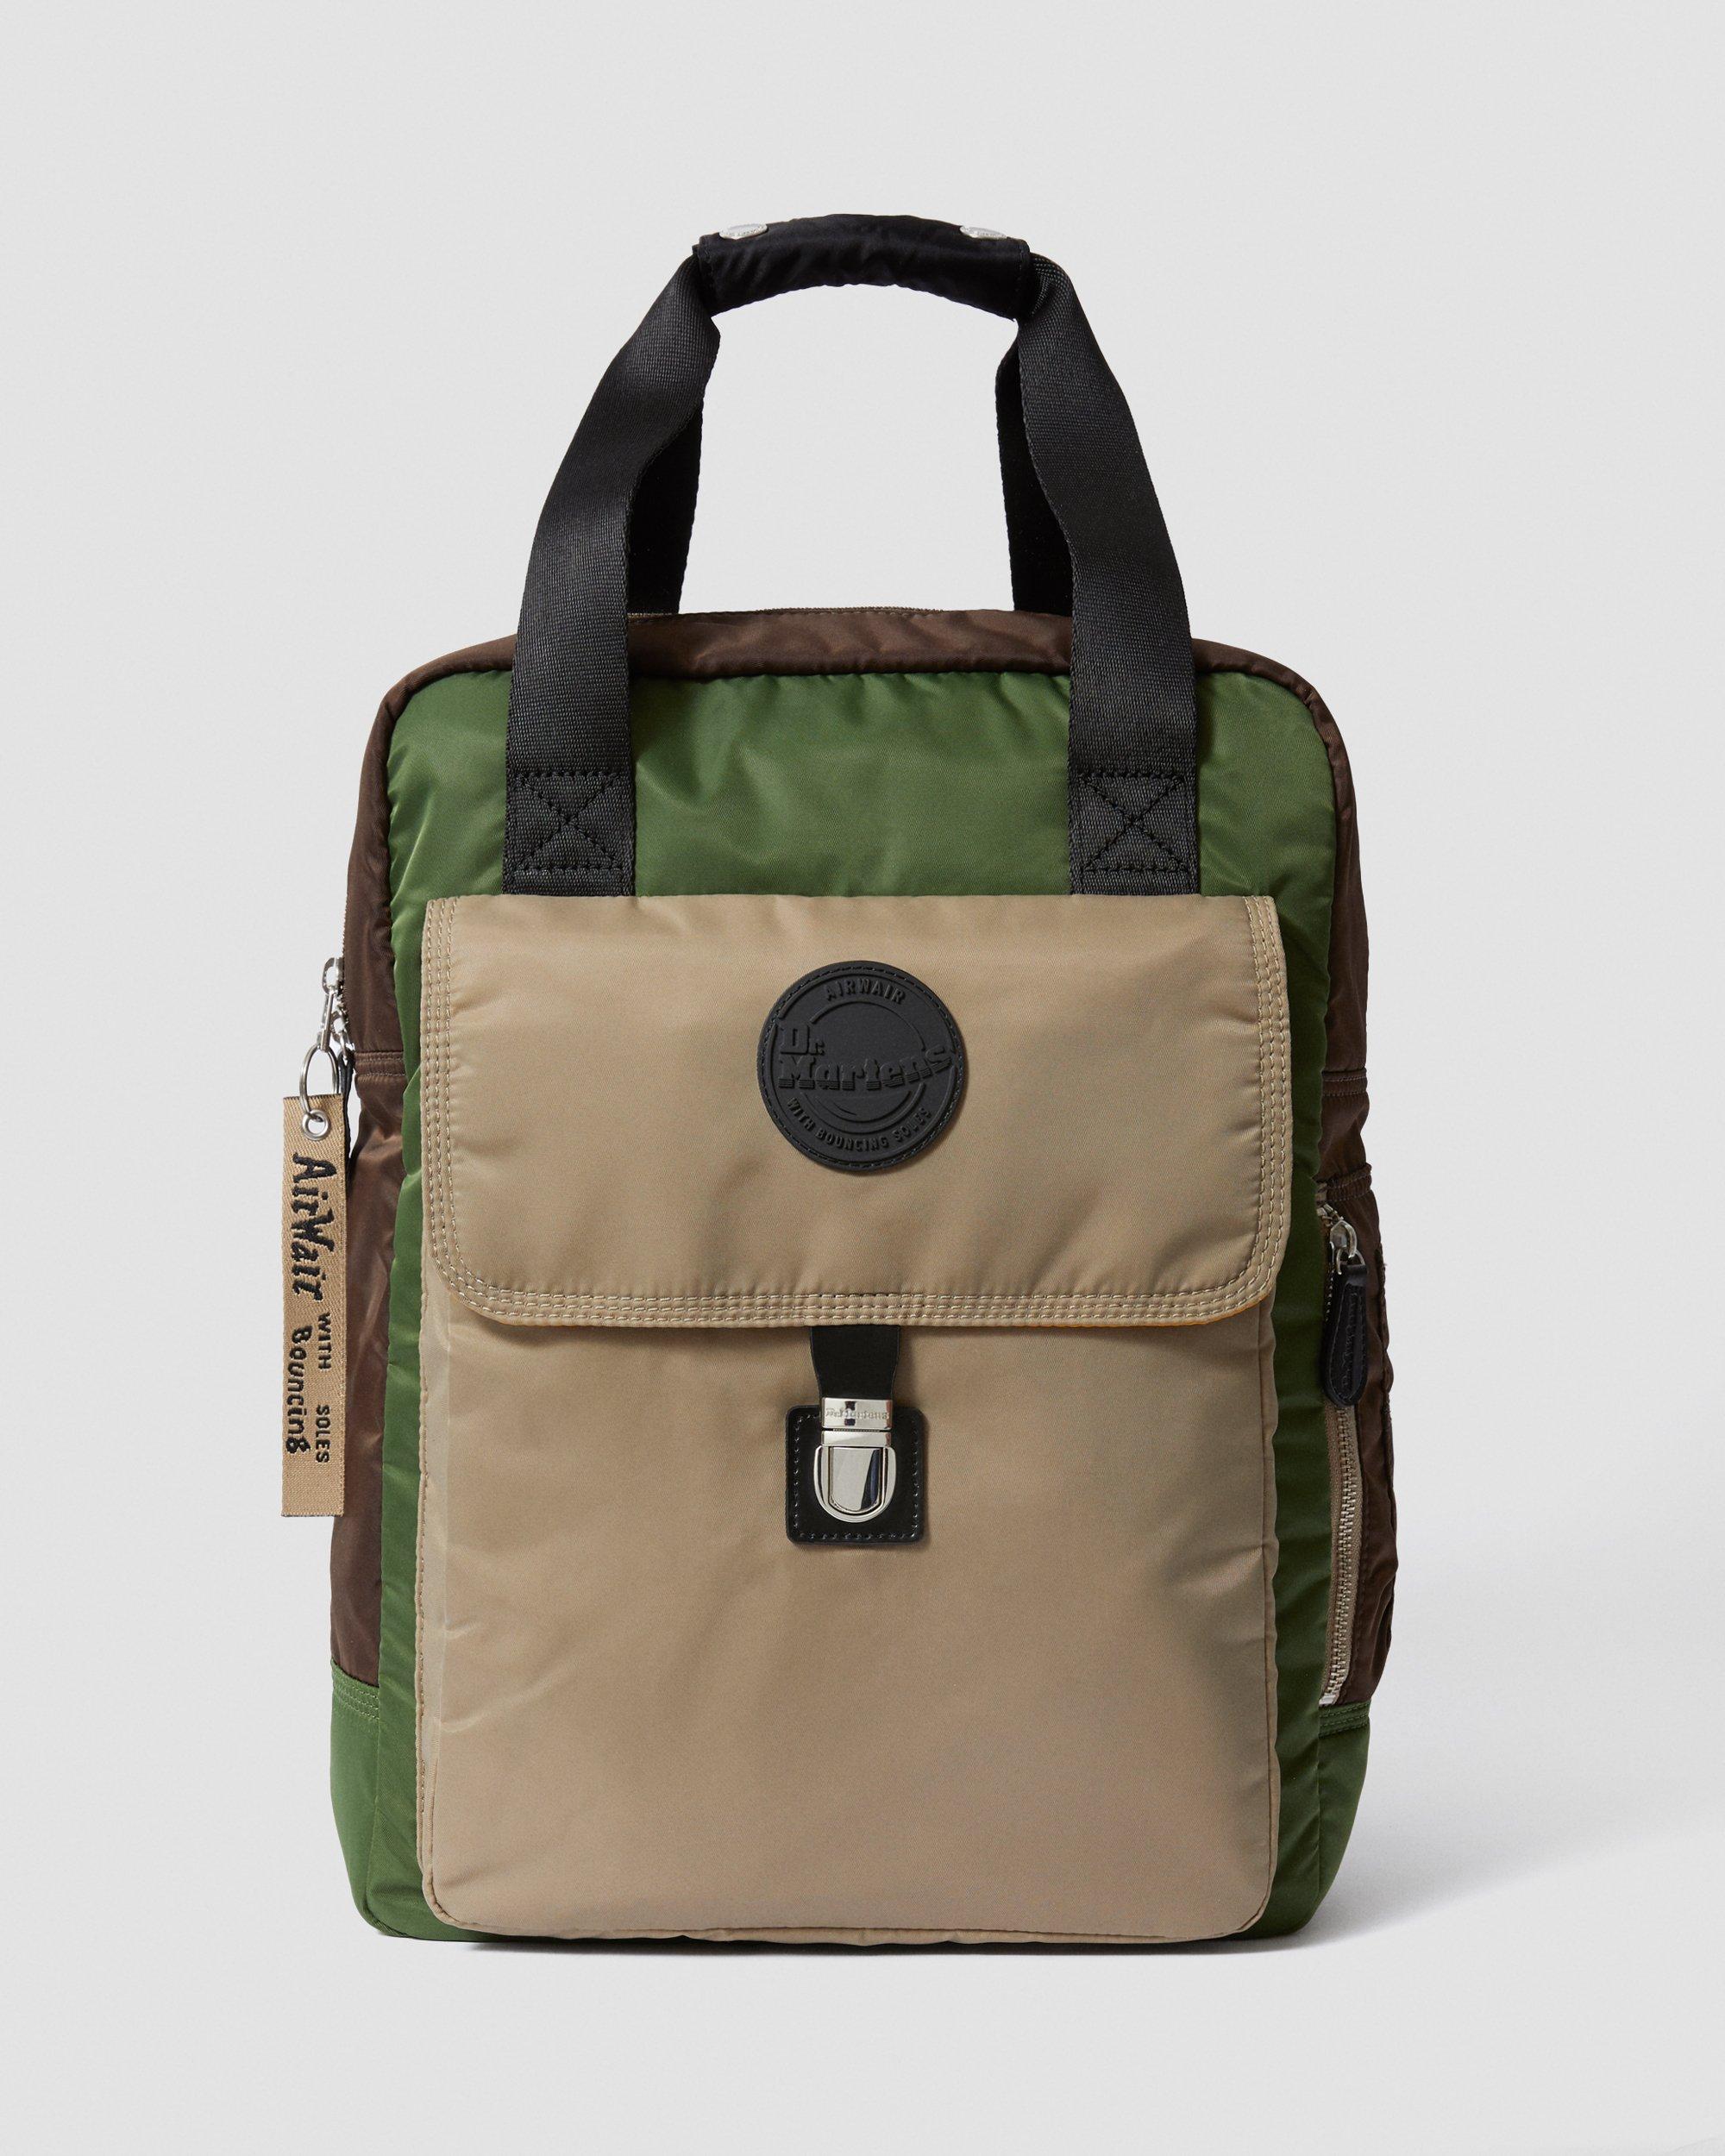 dr martens green backpack